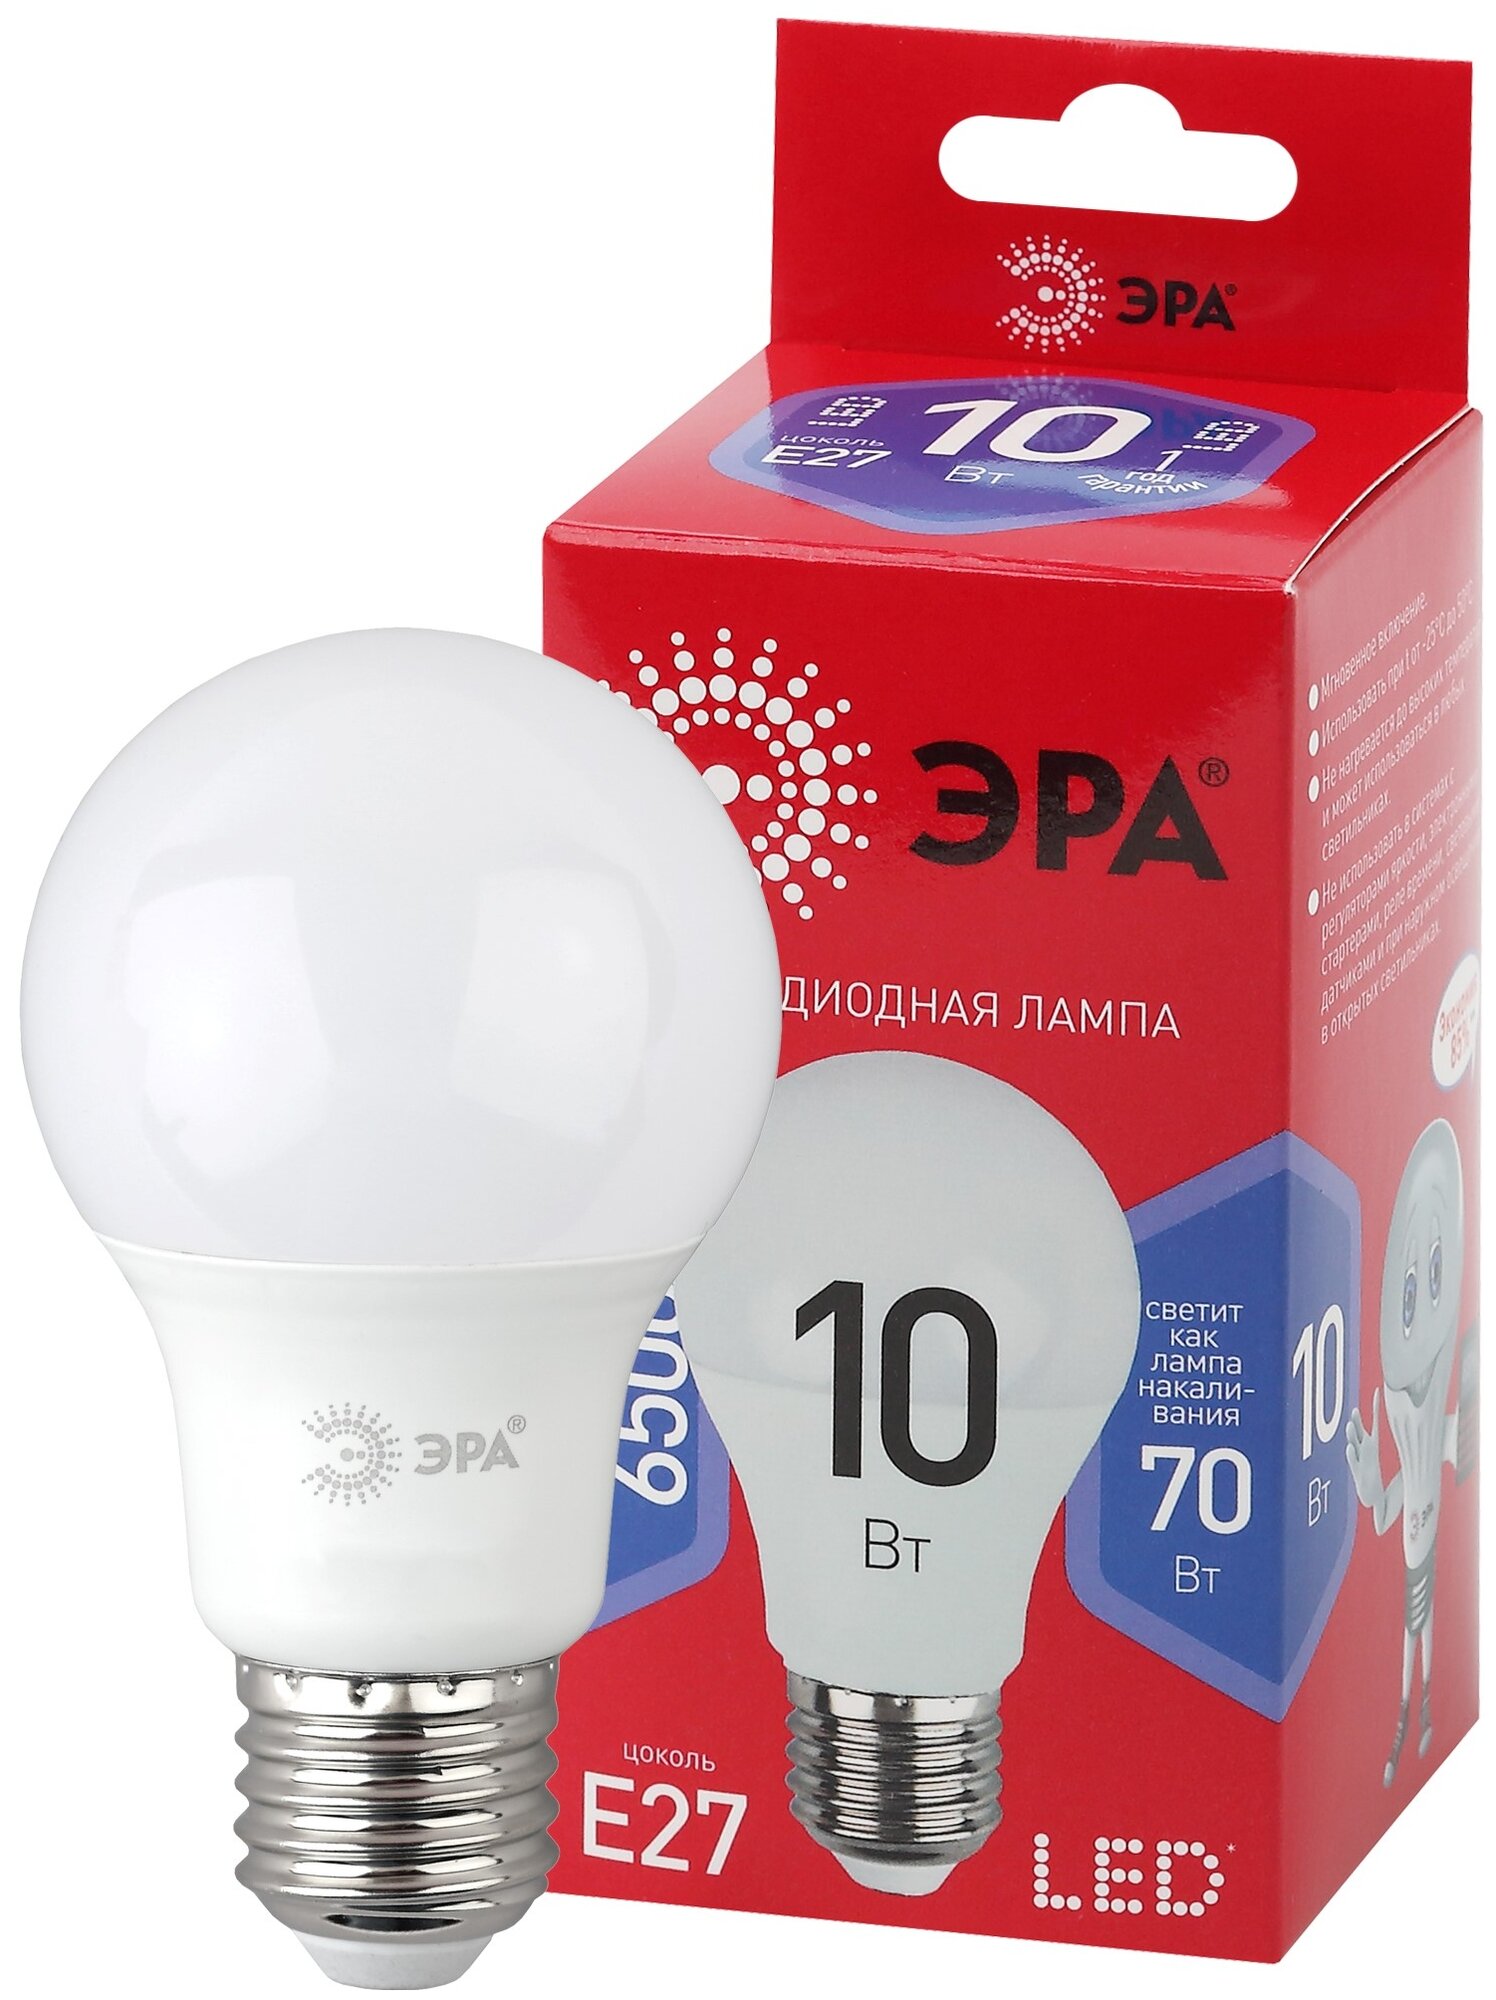 Лампочка светодиодная ЭРА LED A60-10W-865-E27 R 6500K груша 10 Вт